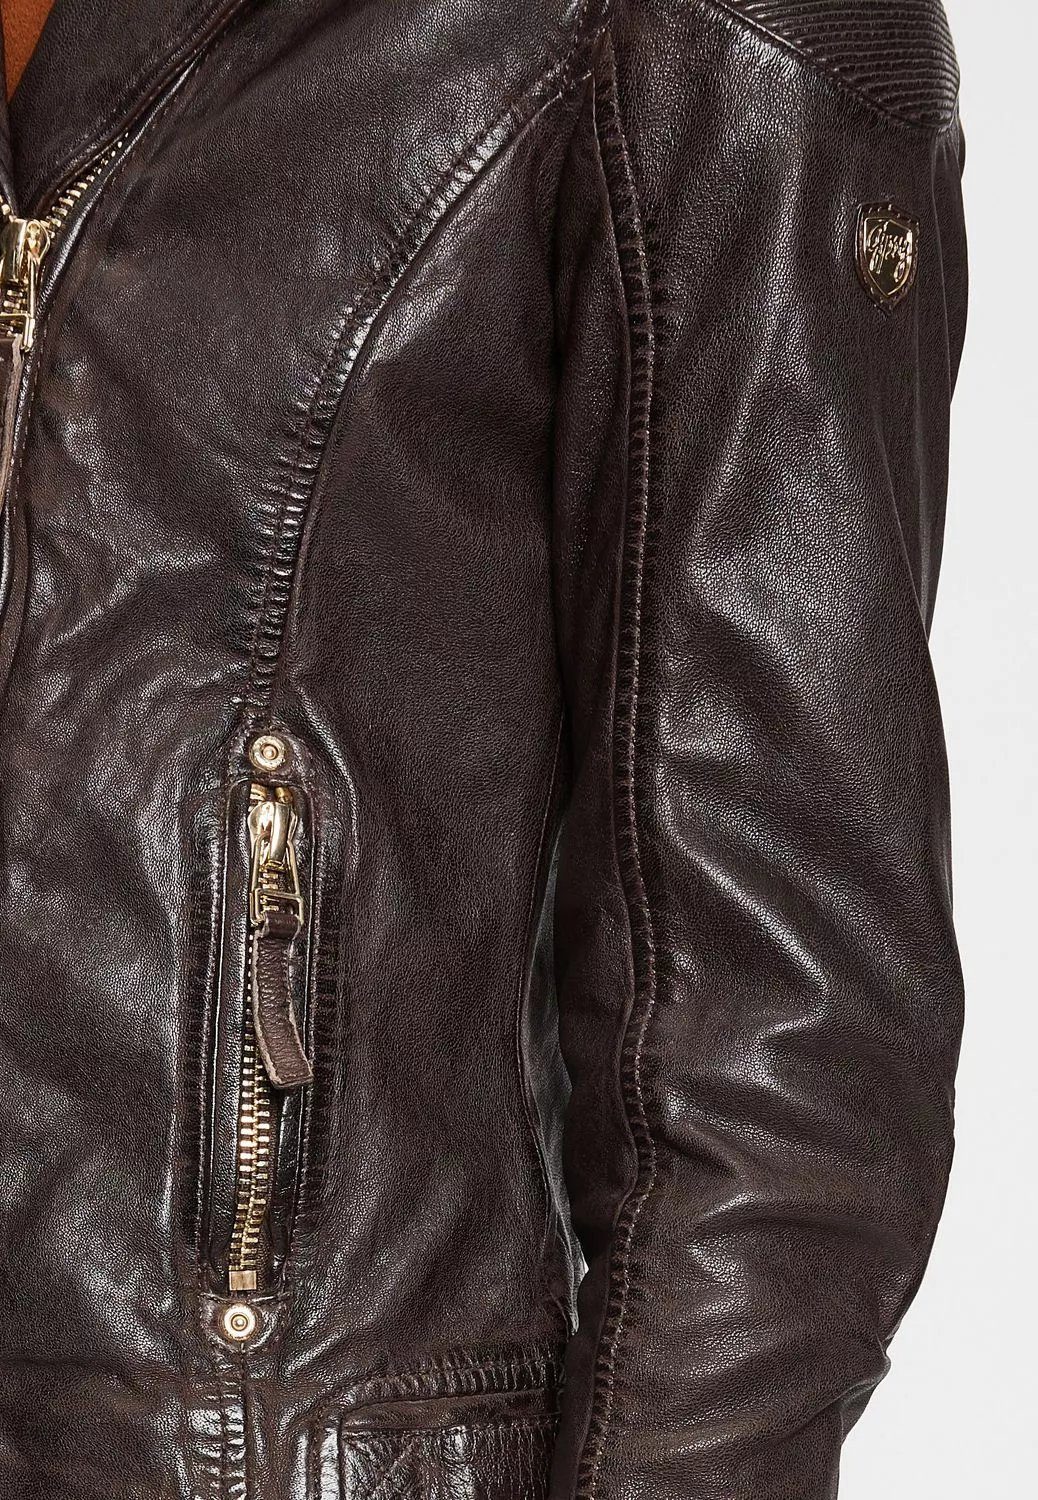 einem Lederjacke Zipper W22 Knöpfe Gold-Ton gehalten GWRaizel warmen in Gipsy brown LACAV und